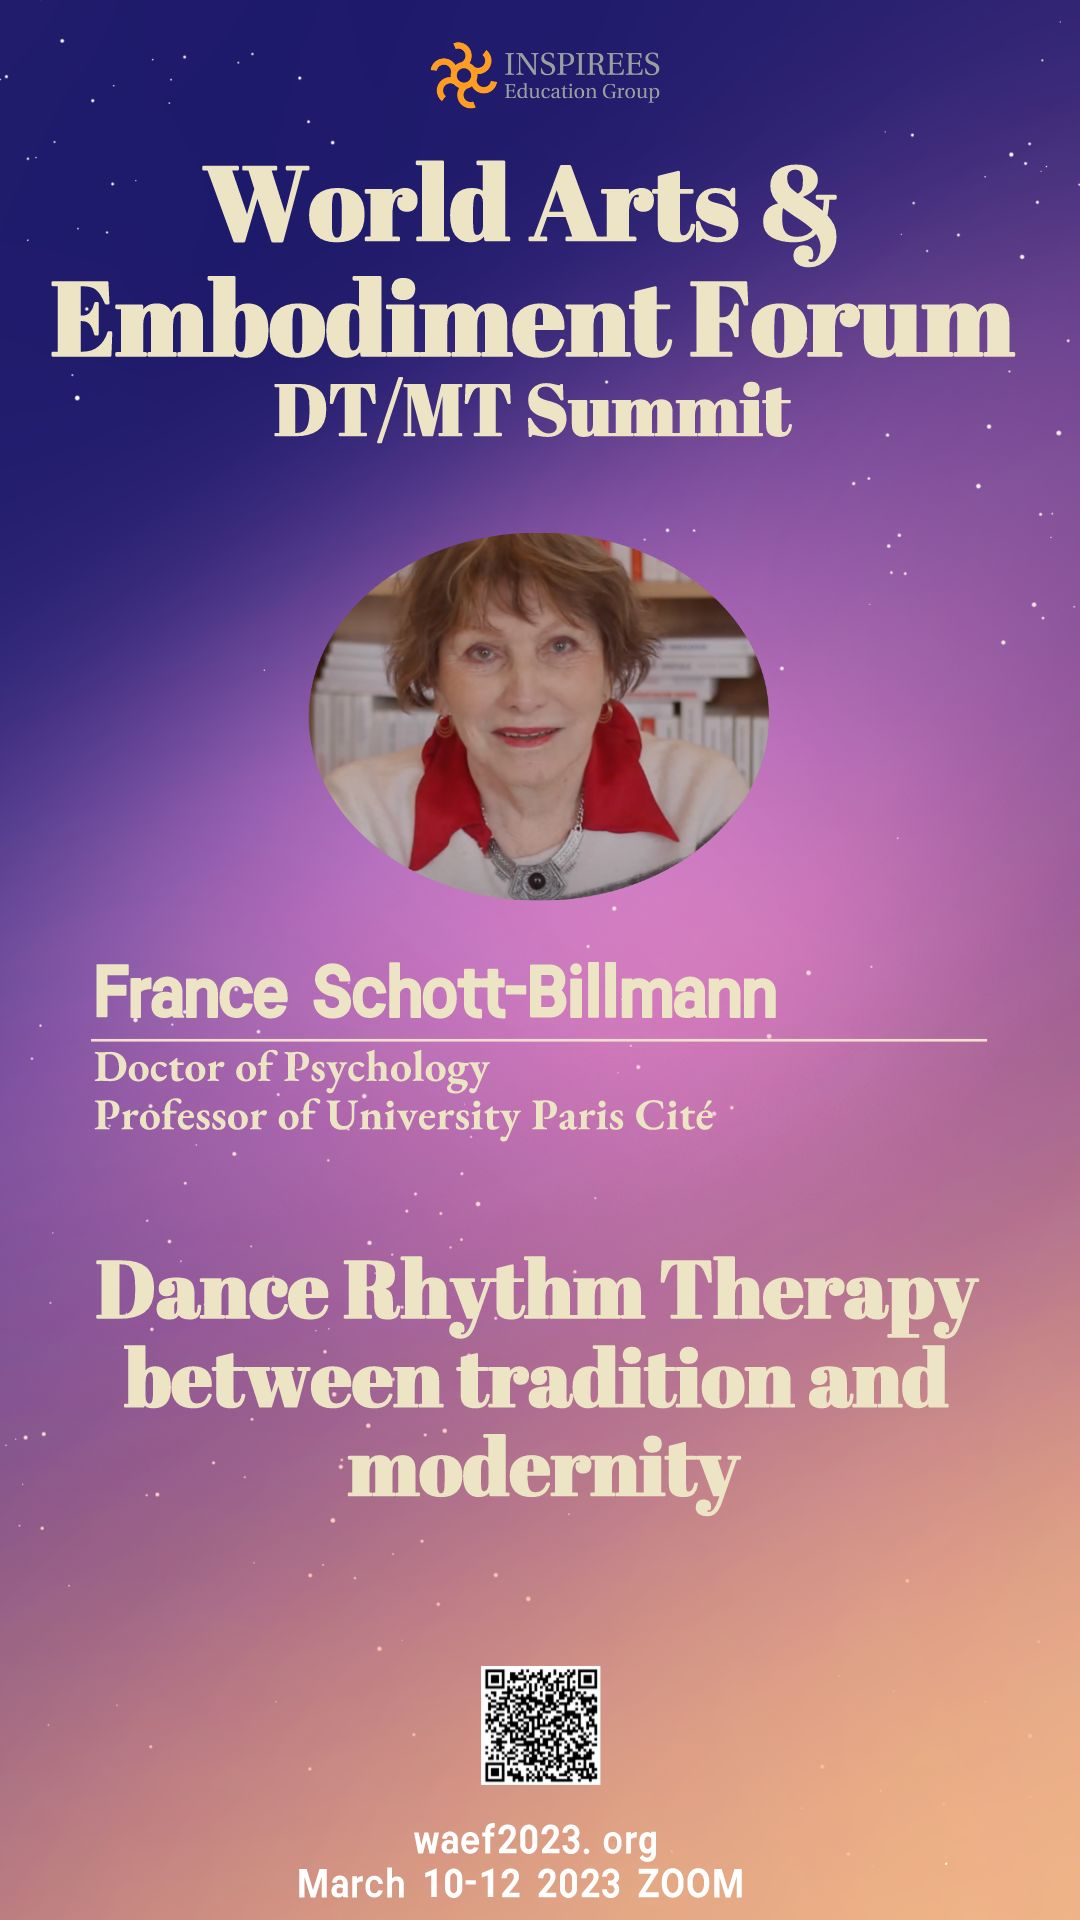 France Schott-Billmann